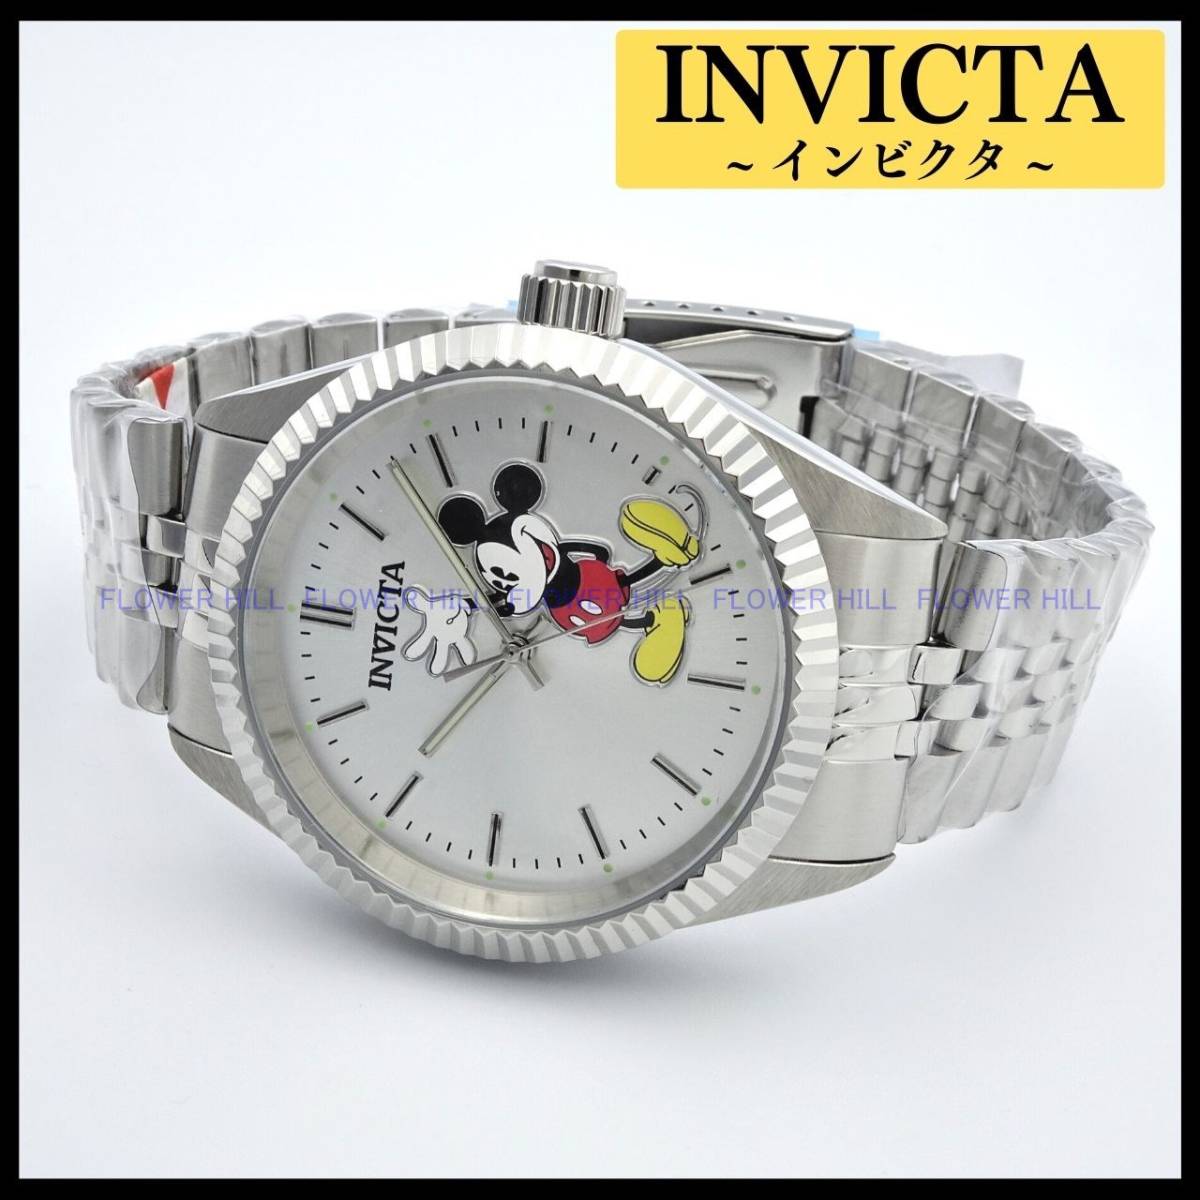 インビクタ INVICTA 腕時計 37850 ディズニー ミッキーマウス